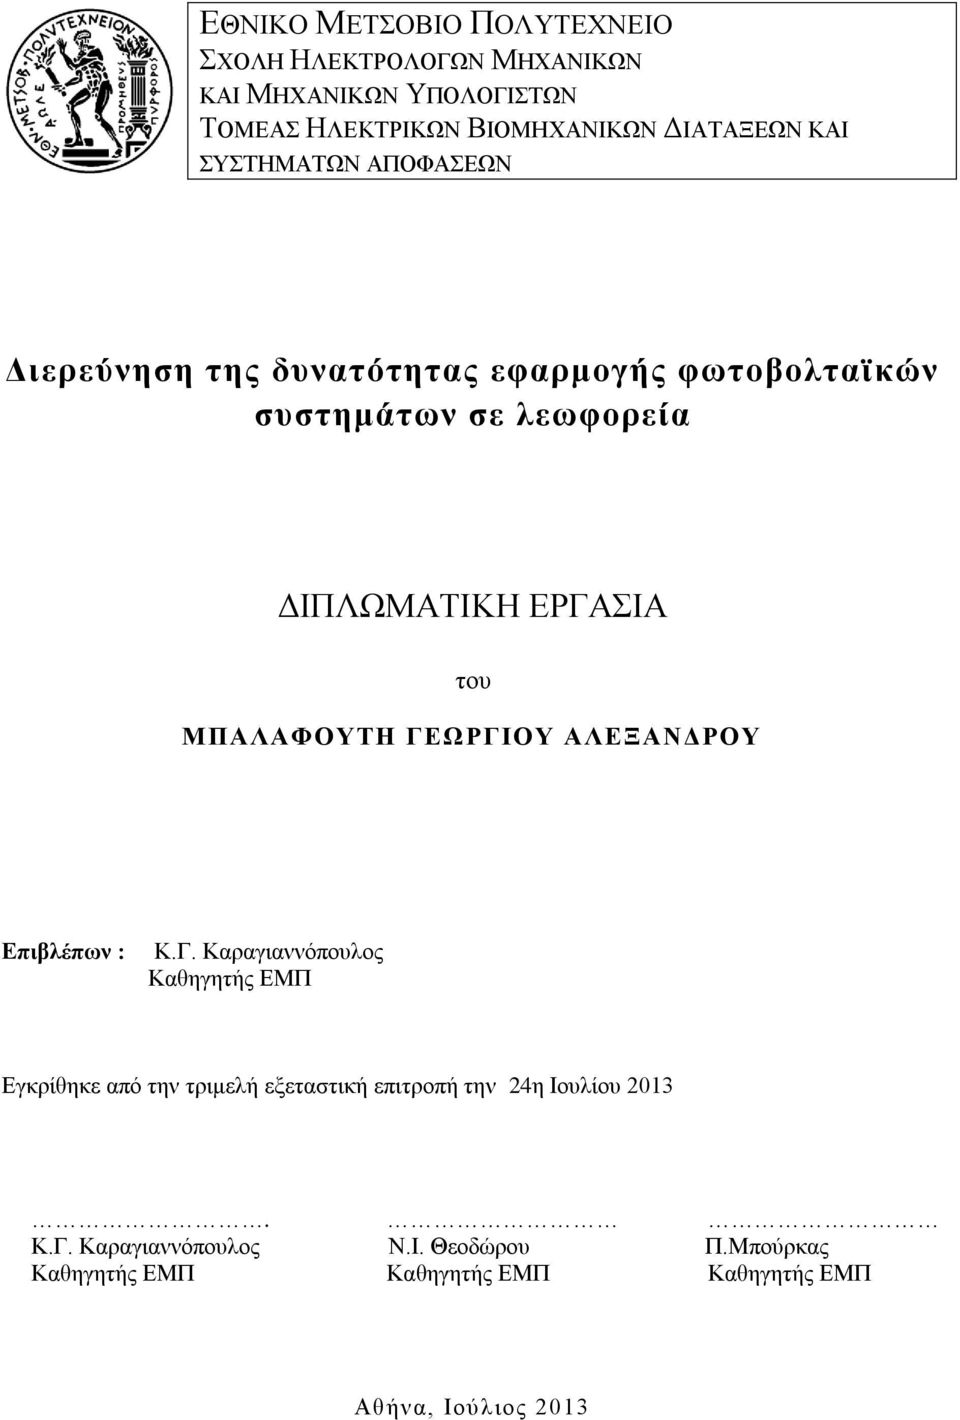 ΜΠΑΛΑΦΟΥΤΗ ΓΕΩΡΓΙΟΥ ΑΛΕΞΑΝΔΡΟΥ Επιβλέπων : Κ.Γ. Καραγιαννόπουλος Καθηγητής ΕΜΠ Εγκρίθηκε από την τριμελή εξεταστική επιτροπή την 24η Ιουλίου 2013.